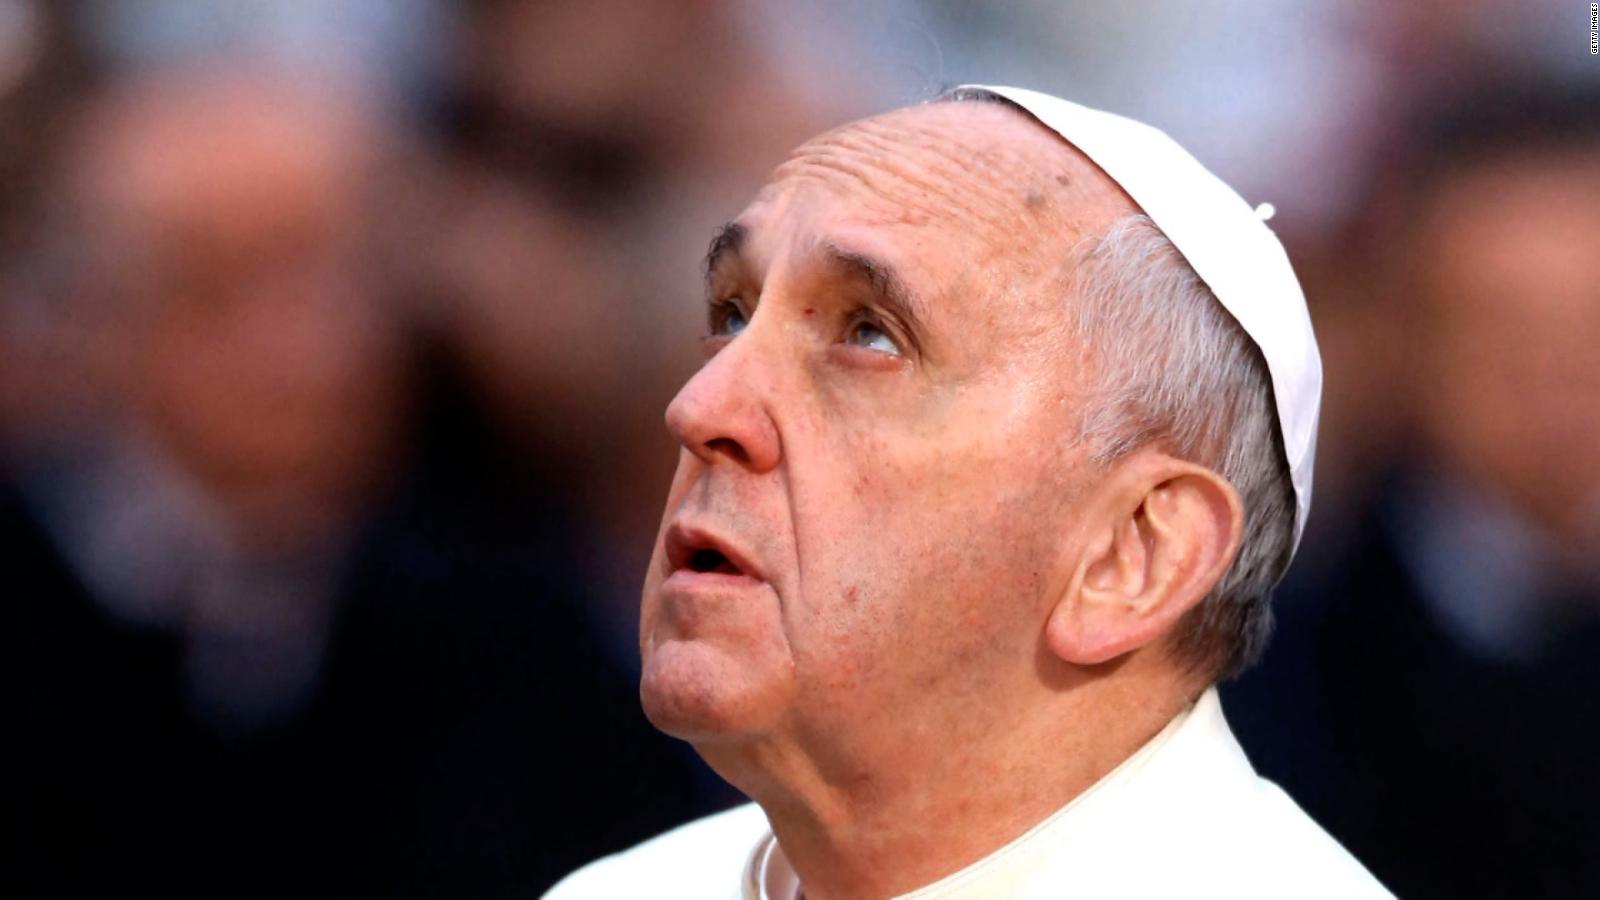 El papa Francisco expresó 'dolor' por el abuso de la Iglesia católica francesa tras informe